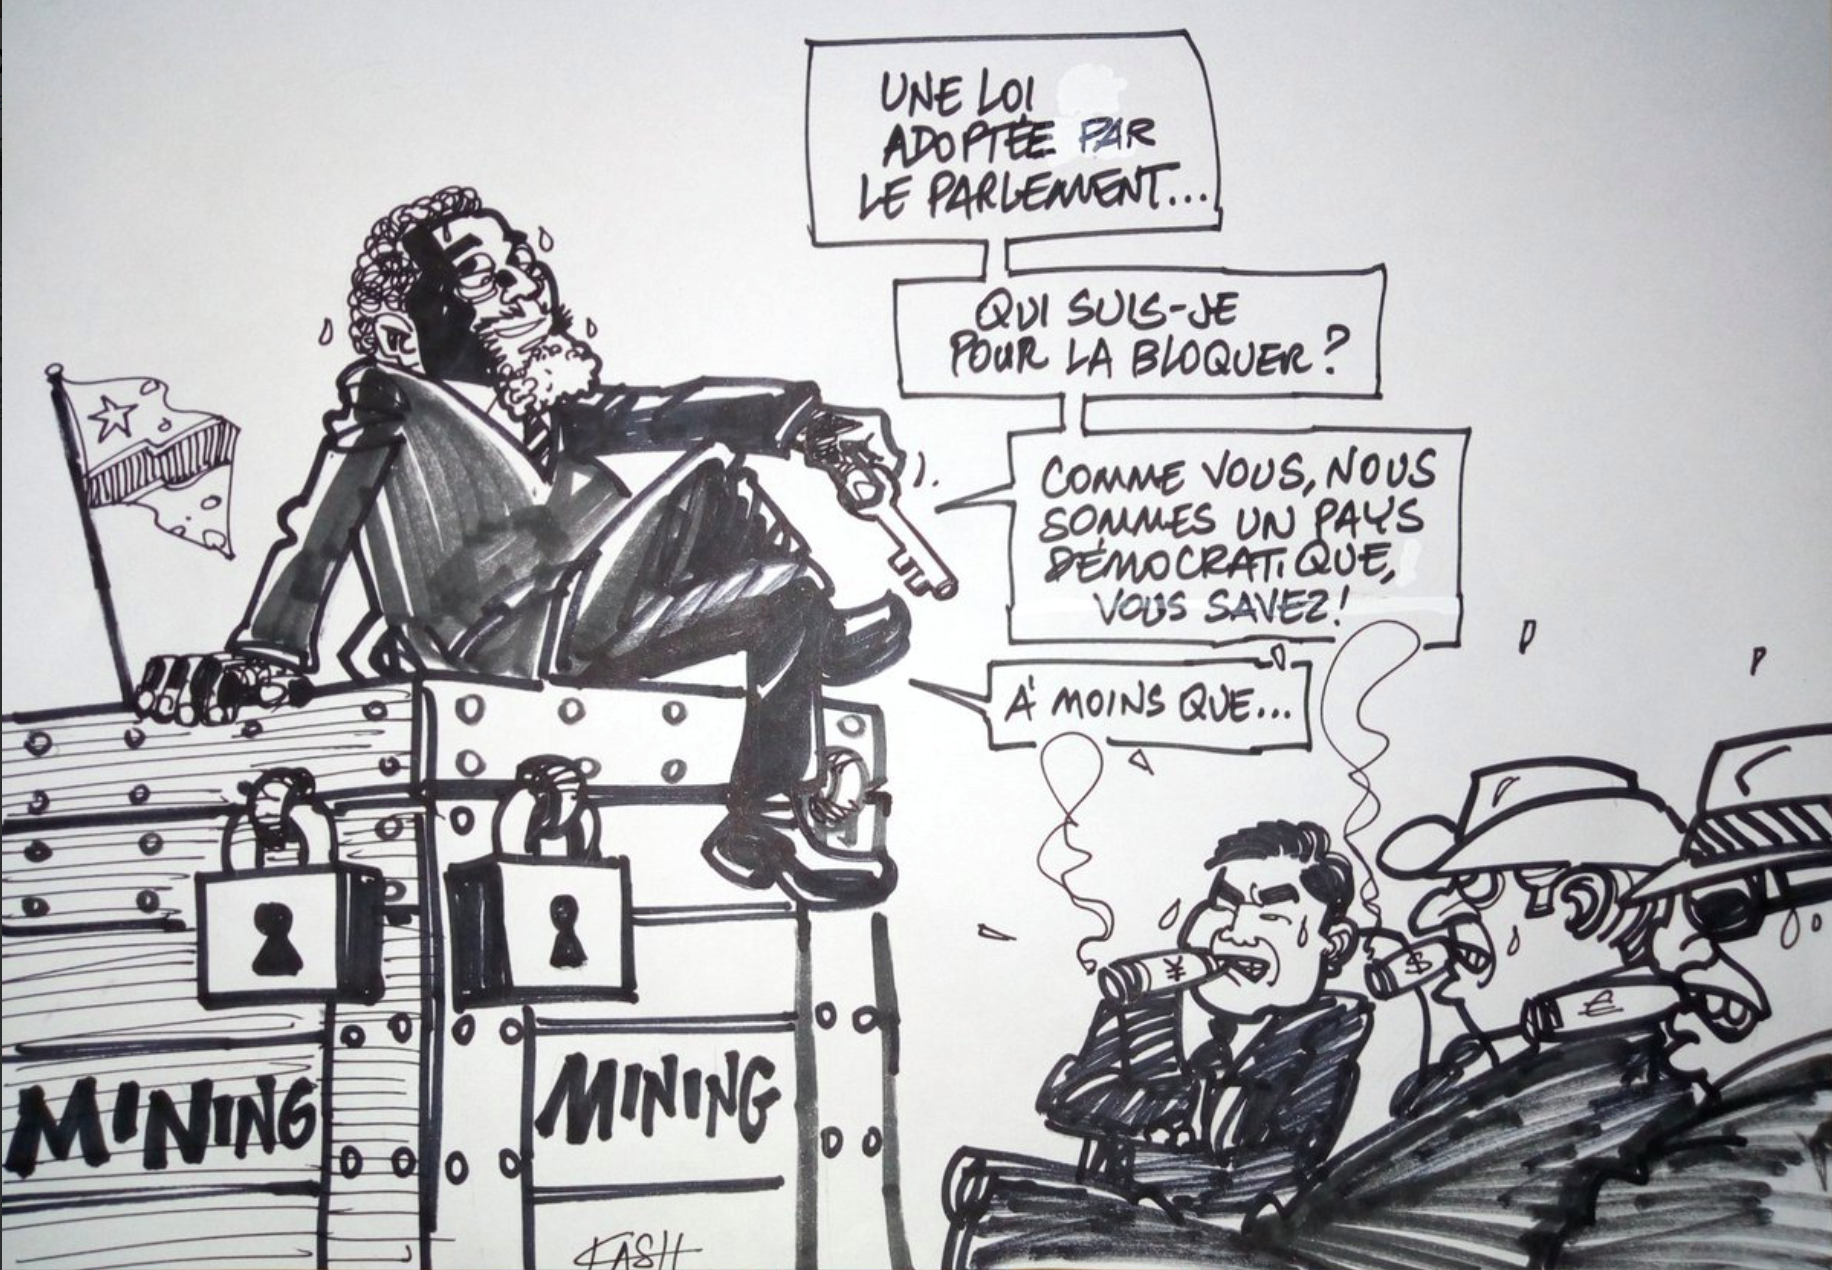 Congo corruption cartoon.jpg